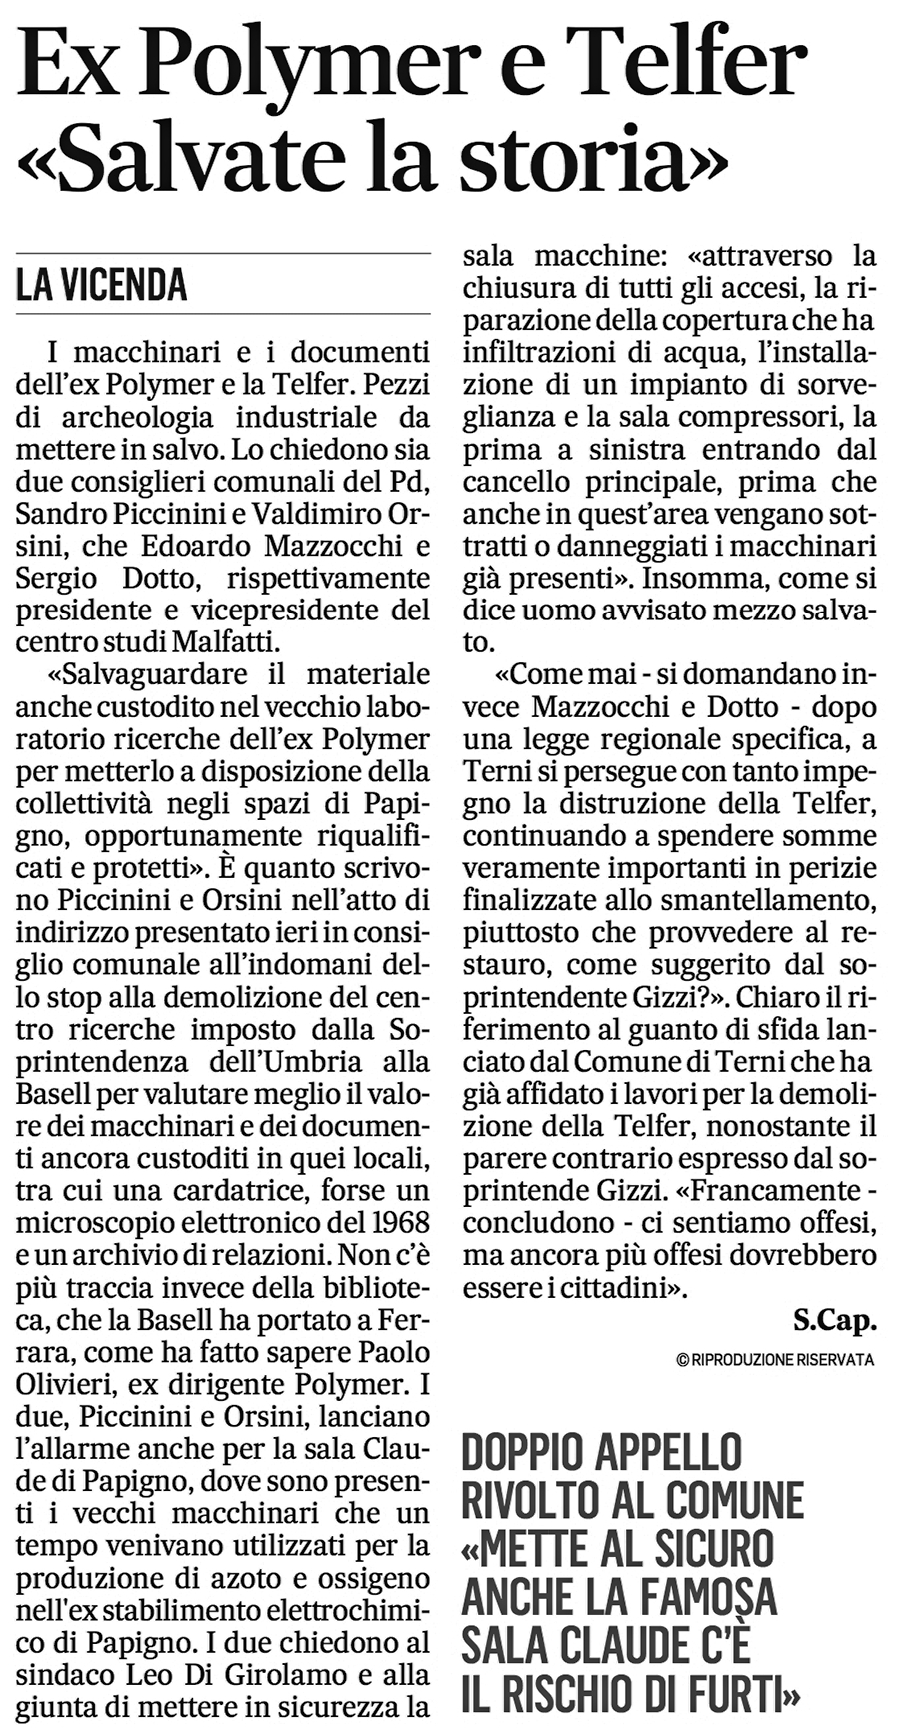 Il Messaggero 04-06-2015 p. 47